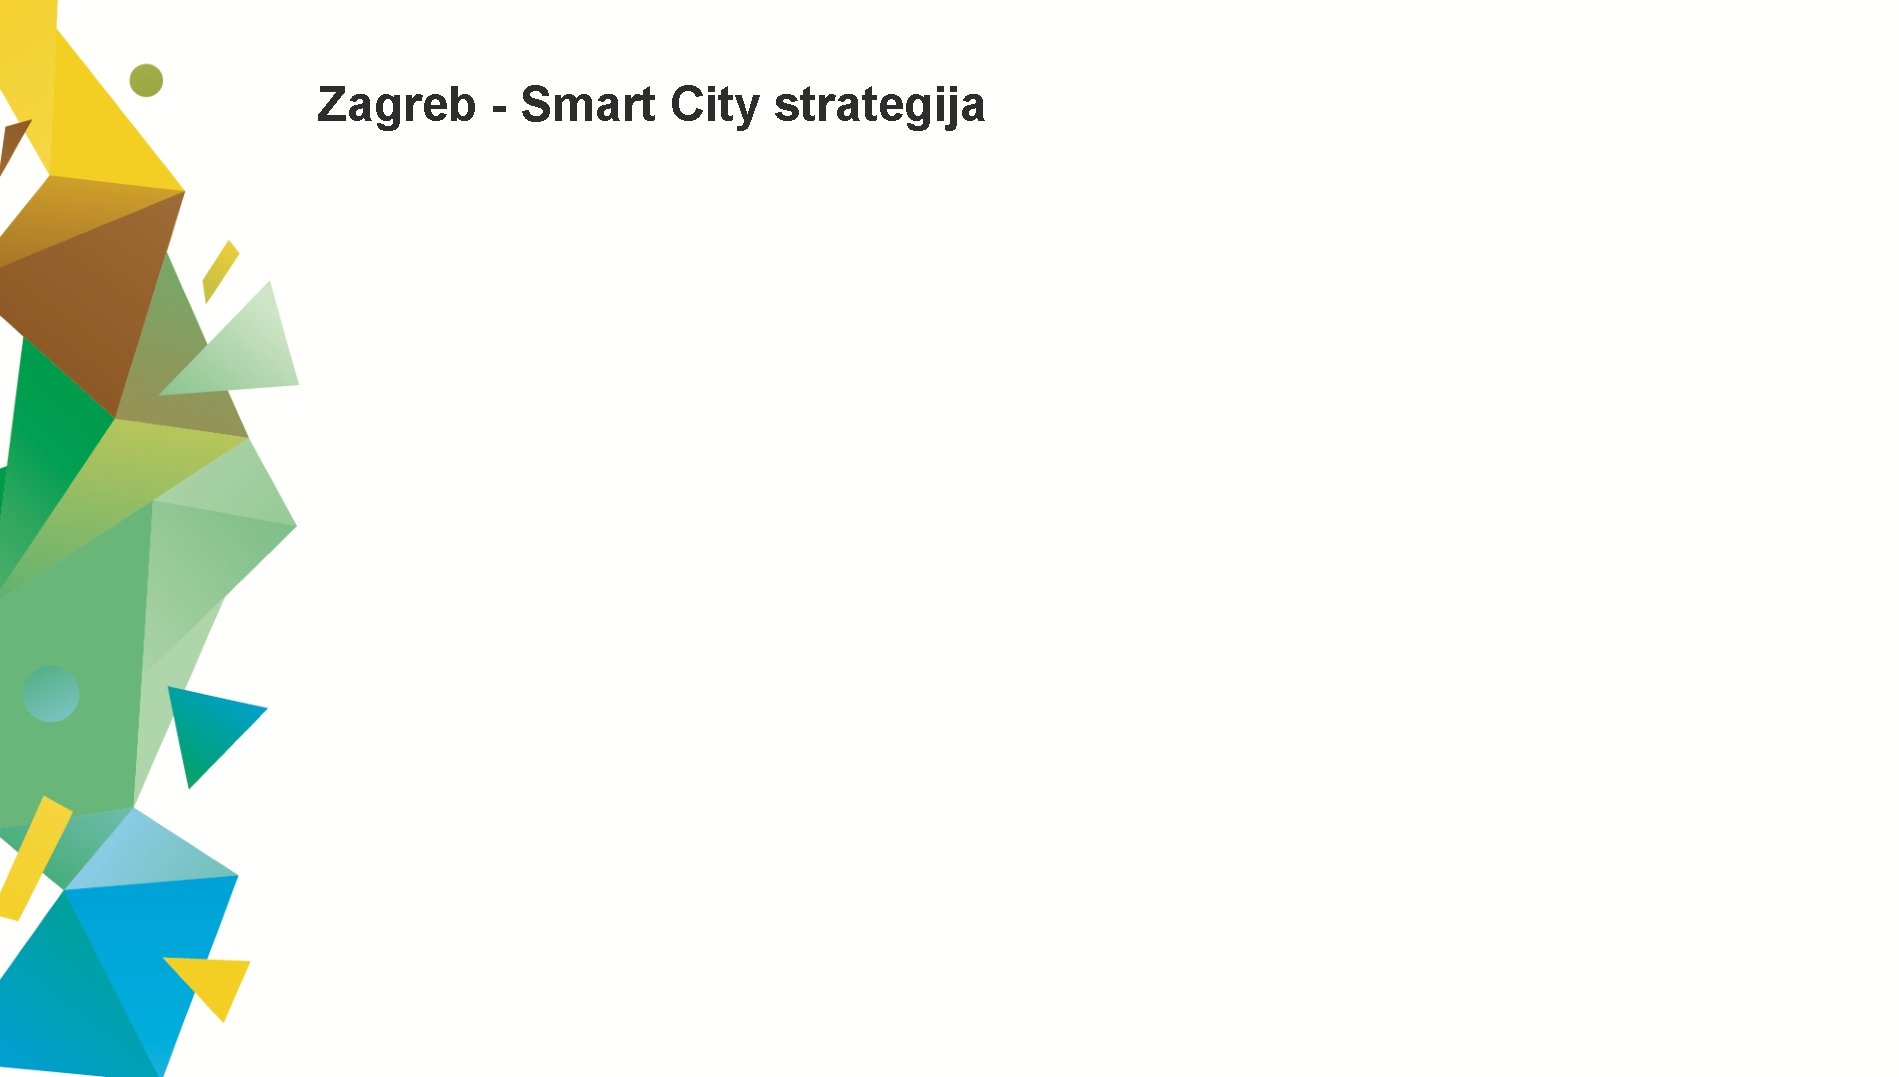 Zagreb - Smart City strategija 